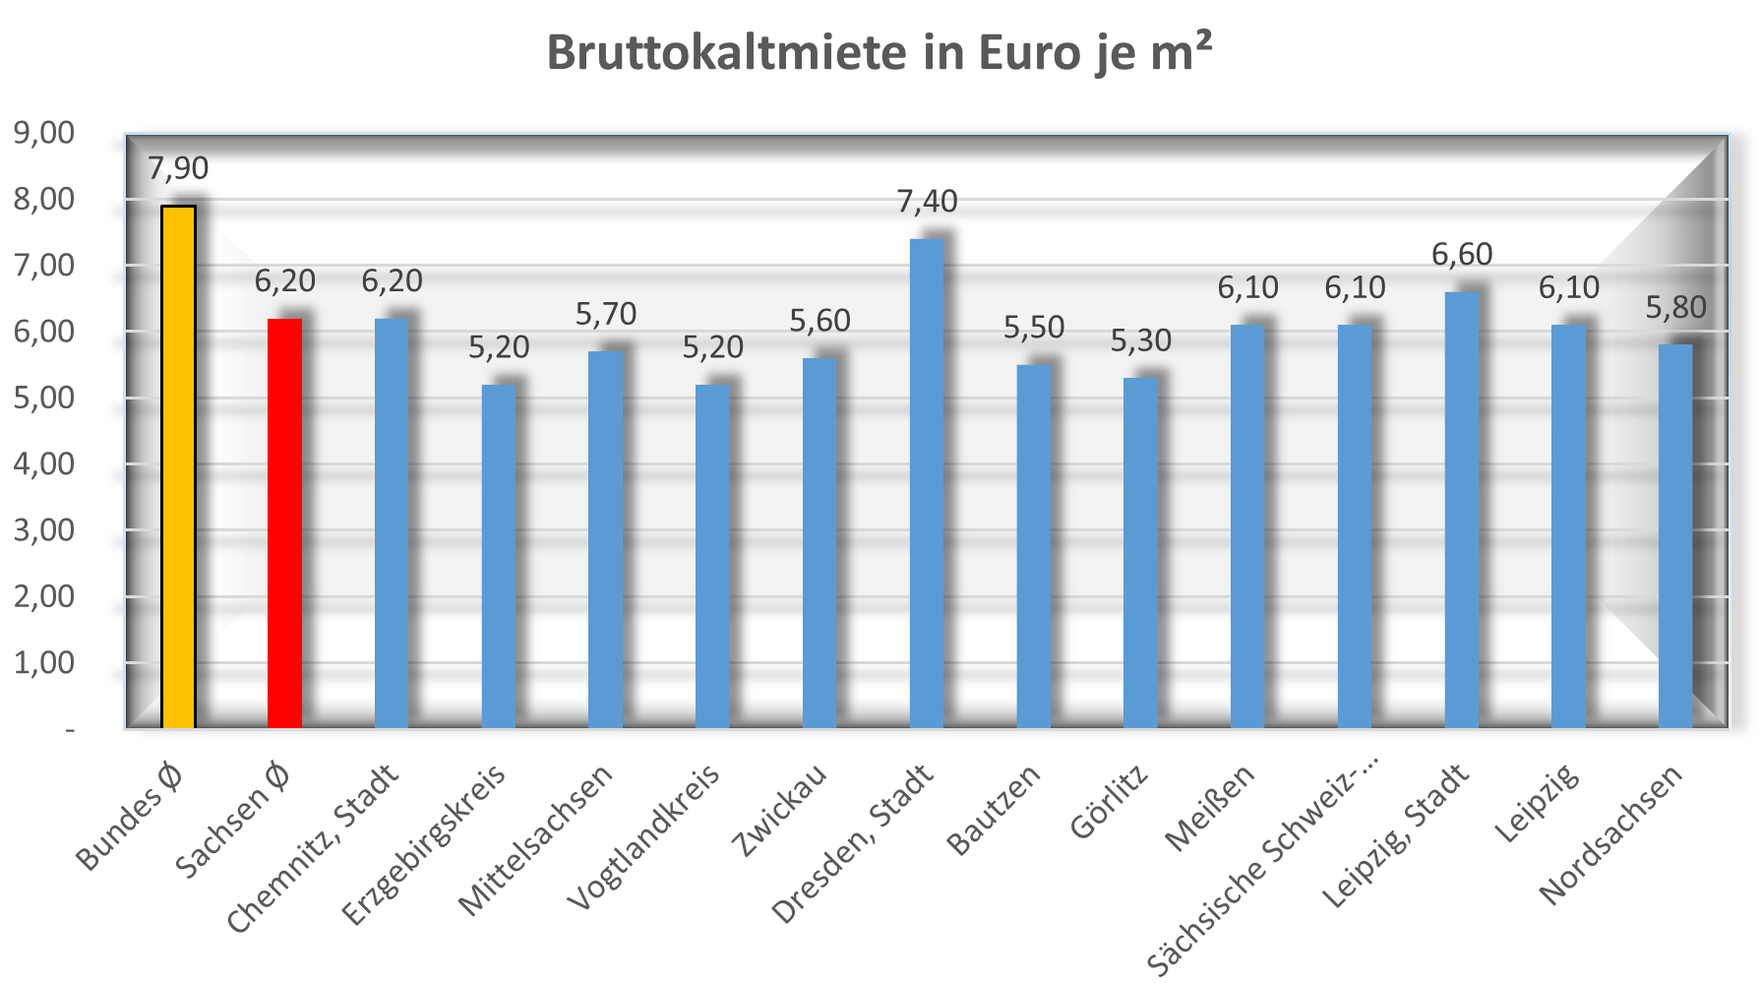 Bruttokaltmiete in Euro je m² Bundesschnitt ist 7,90, Schnitt in Sachsen liegt niedriger, bei 6,20 Euro